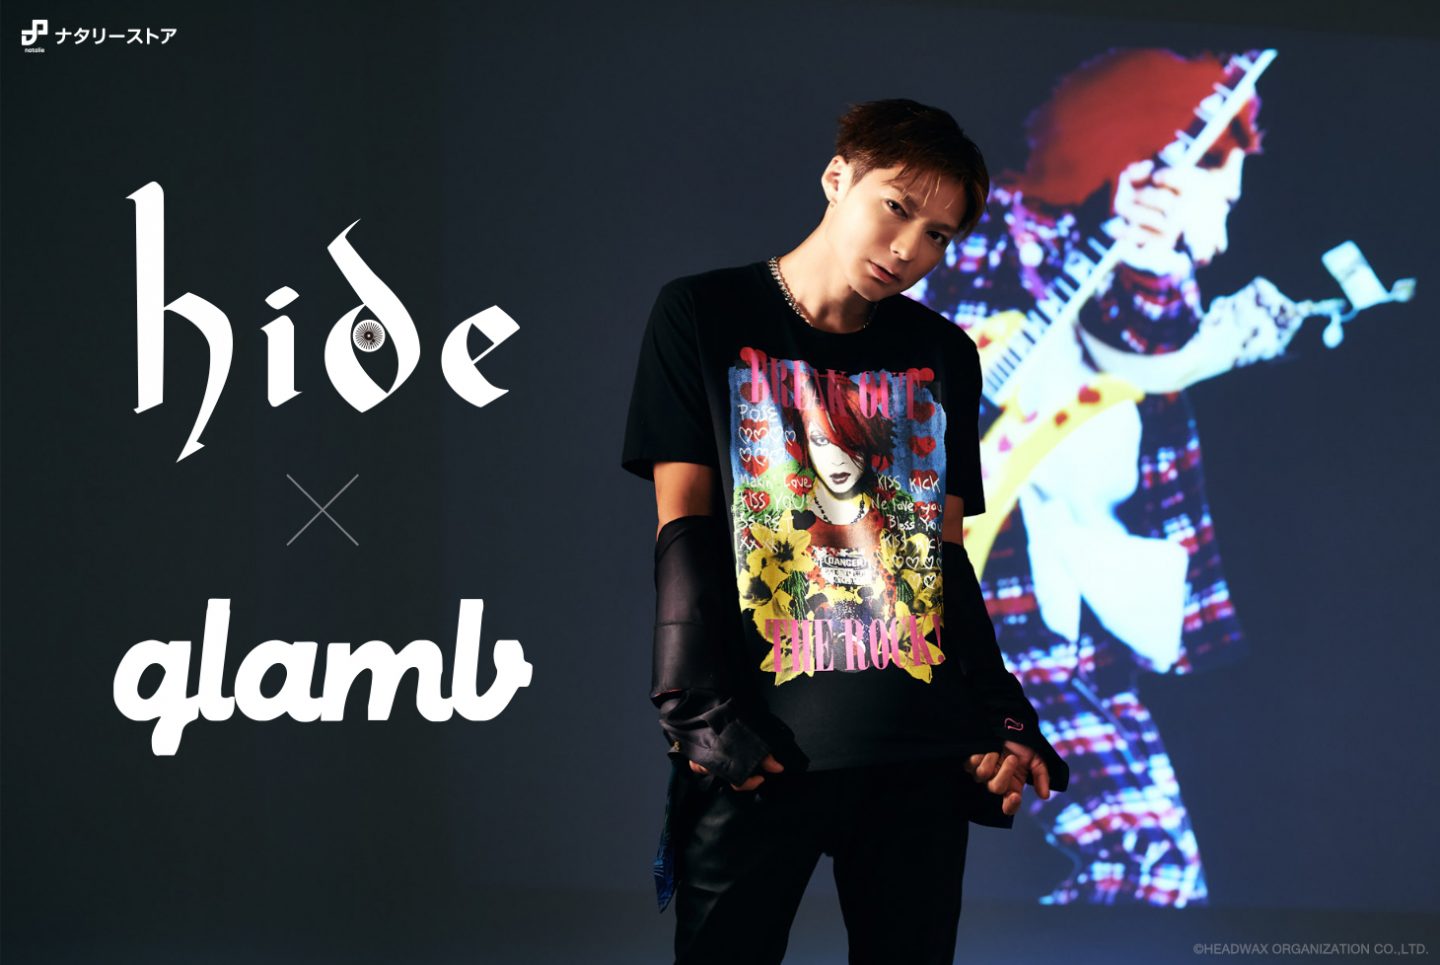 【hide × glamb】 ファッションブランド・glamb（グラム）のコラボレーションアイテムが本日受注スタート - hide